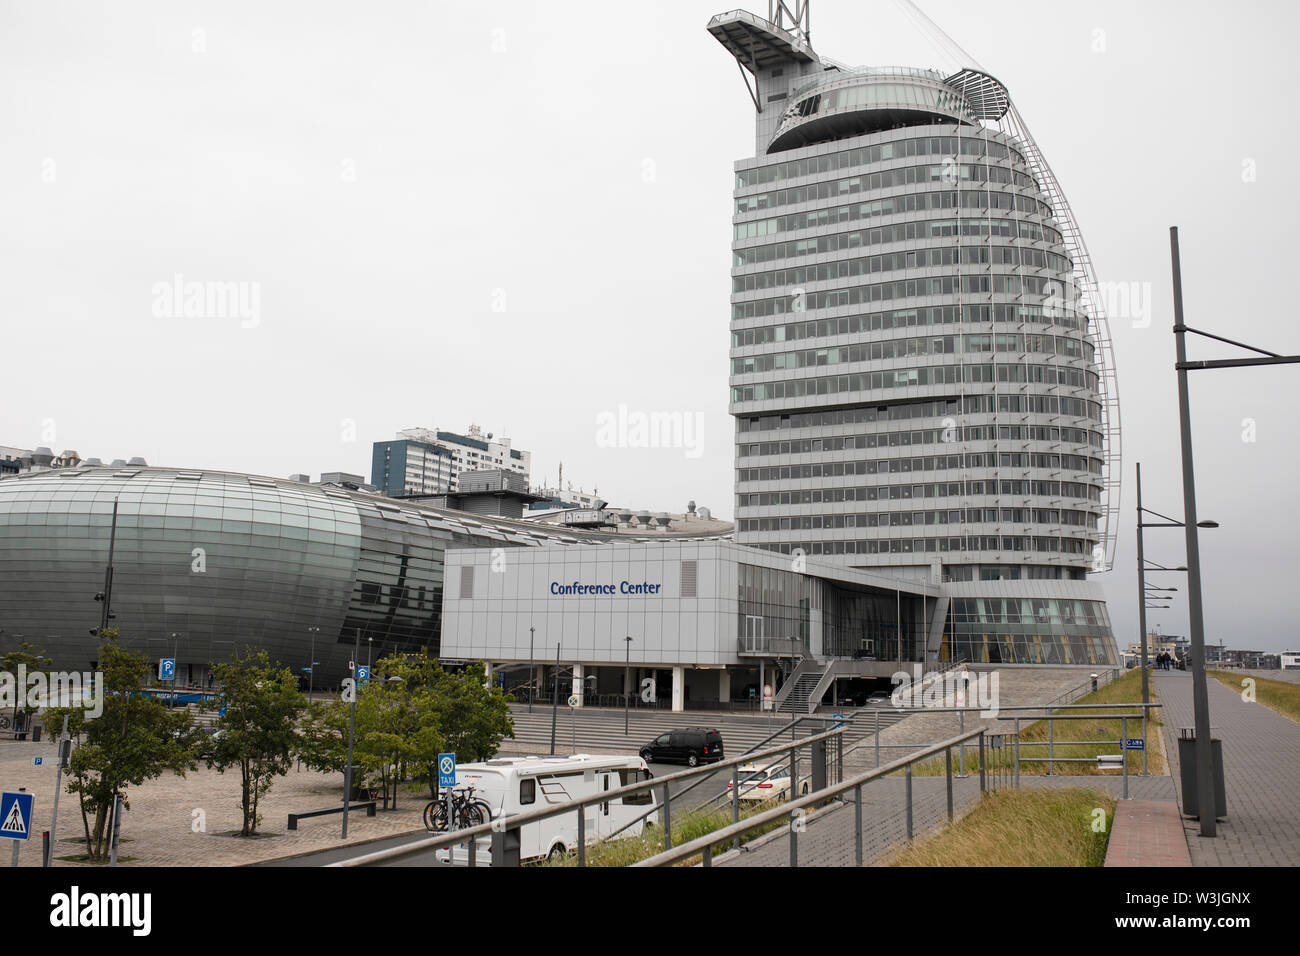 Das Konferenzzentrum im Atlantic Hotel Sail City und das Klimahaus in Bremerhaven, Deutschland. Stockfoto